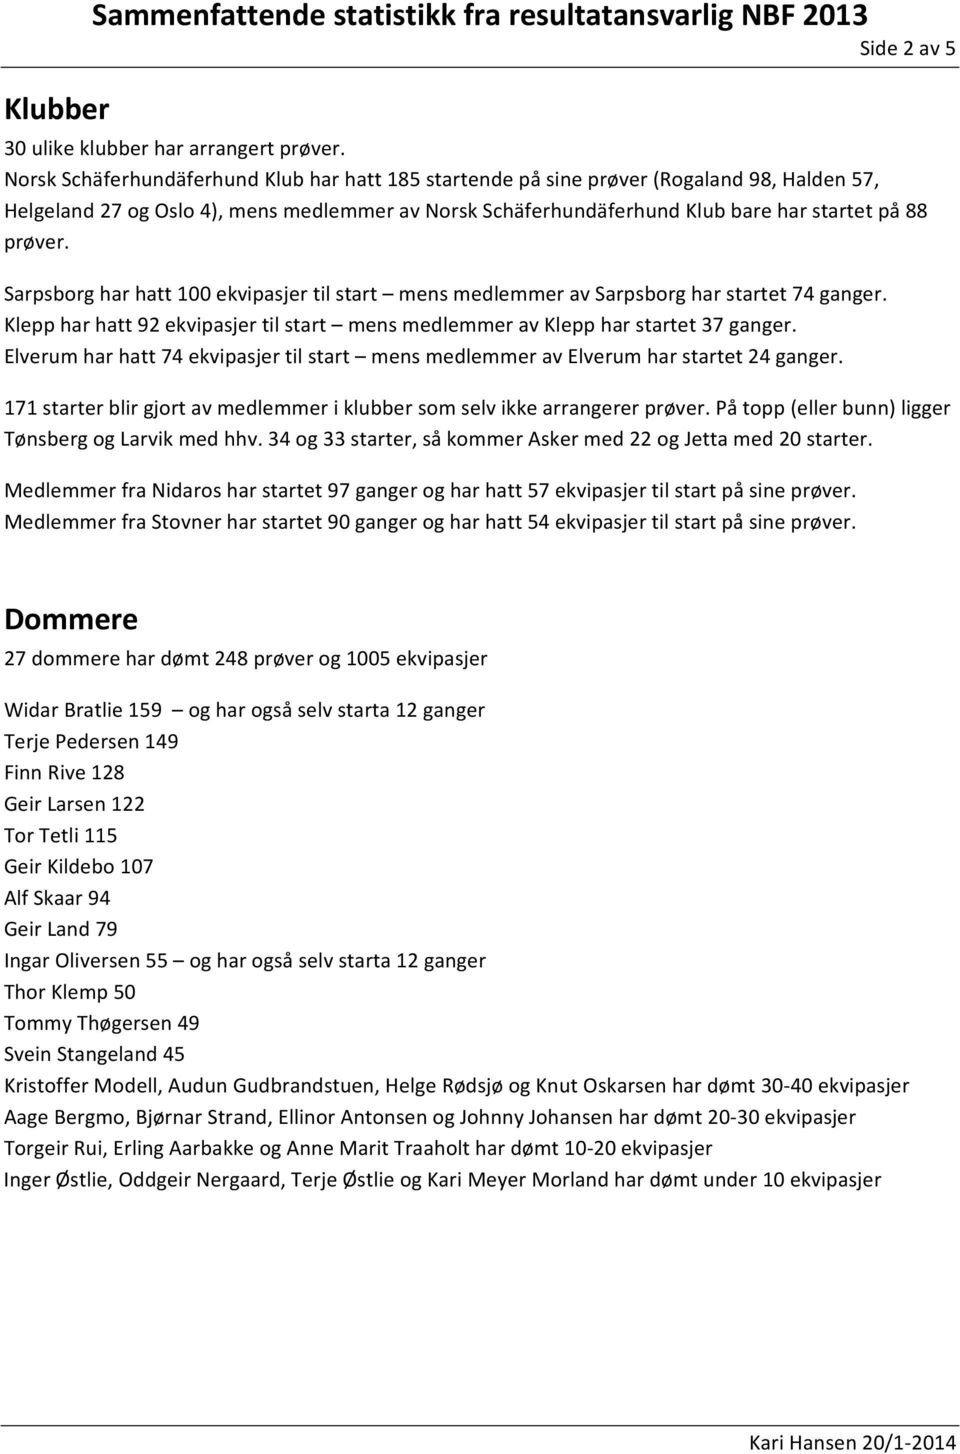 Sarpsborg har hatt 100 ekvipasjer til start mens medlemmer av Sarpsborg har startet 74 ganger. Klepp har hatt 92 ekvipasjer til start mens medlemmer av Klepp har startet 37 ganger.